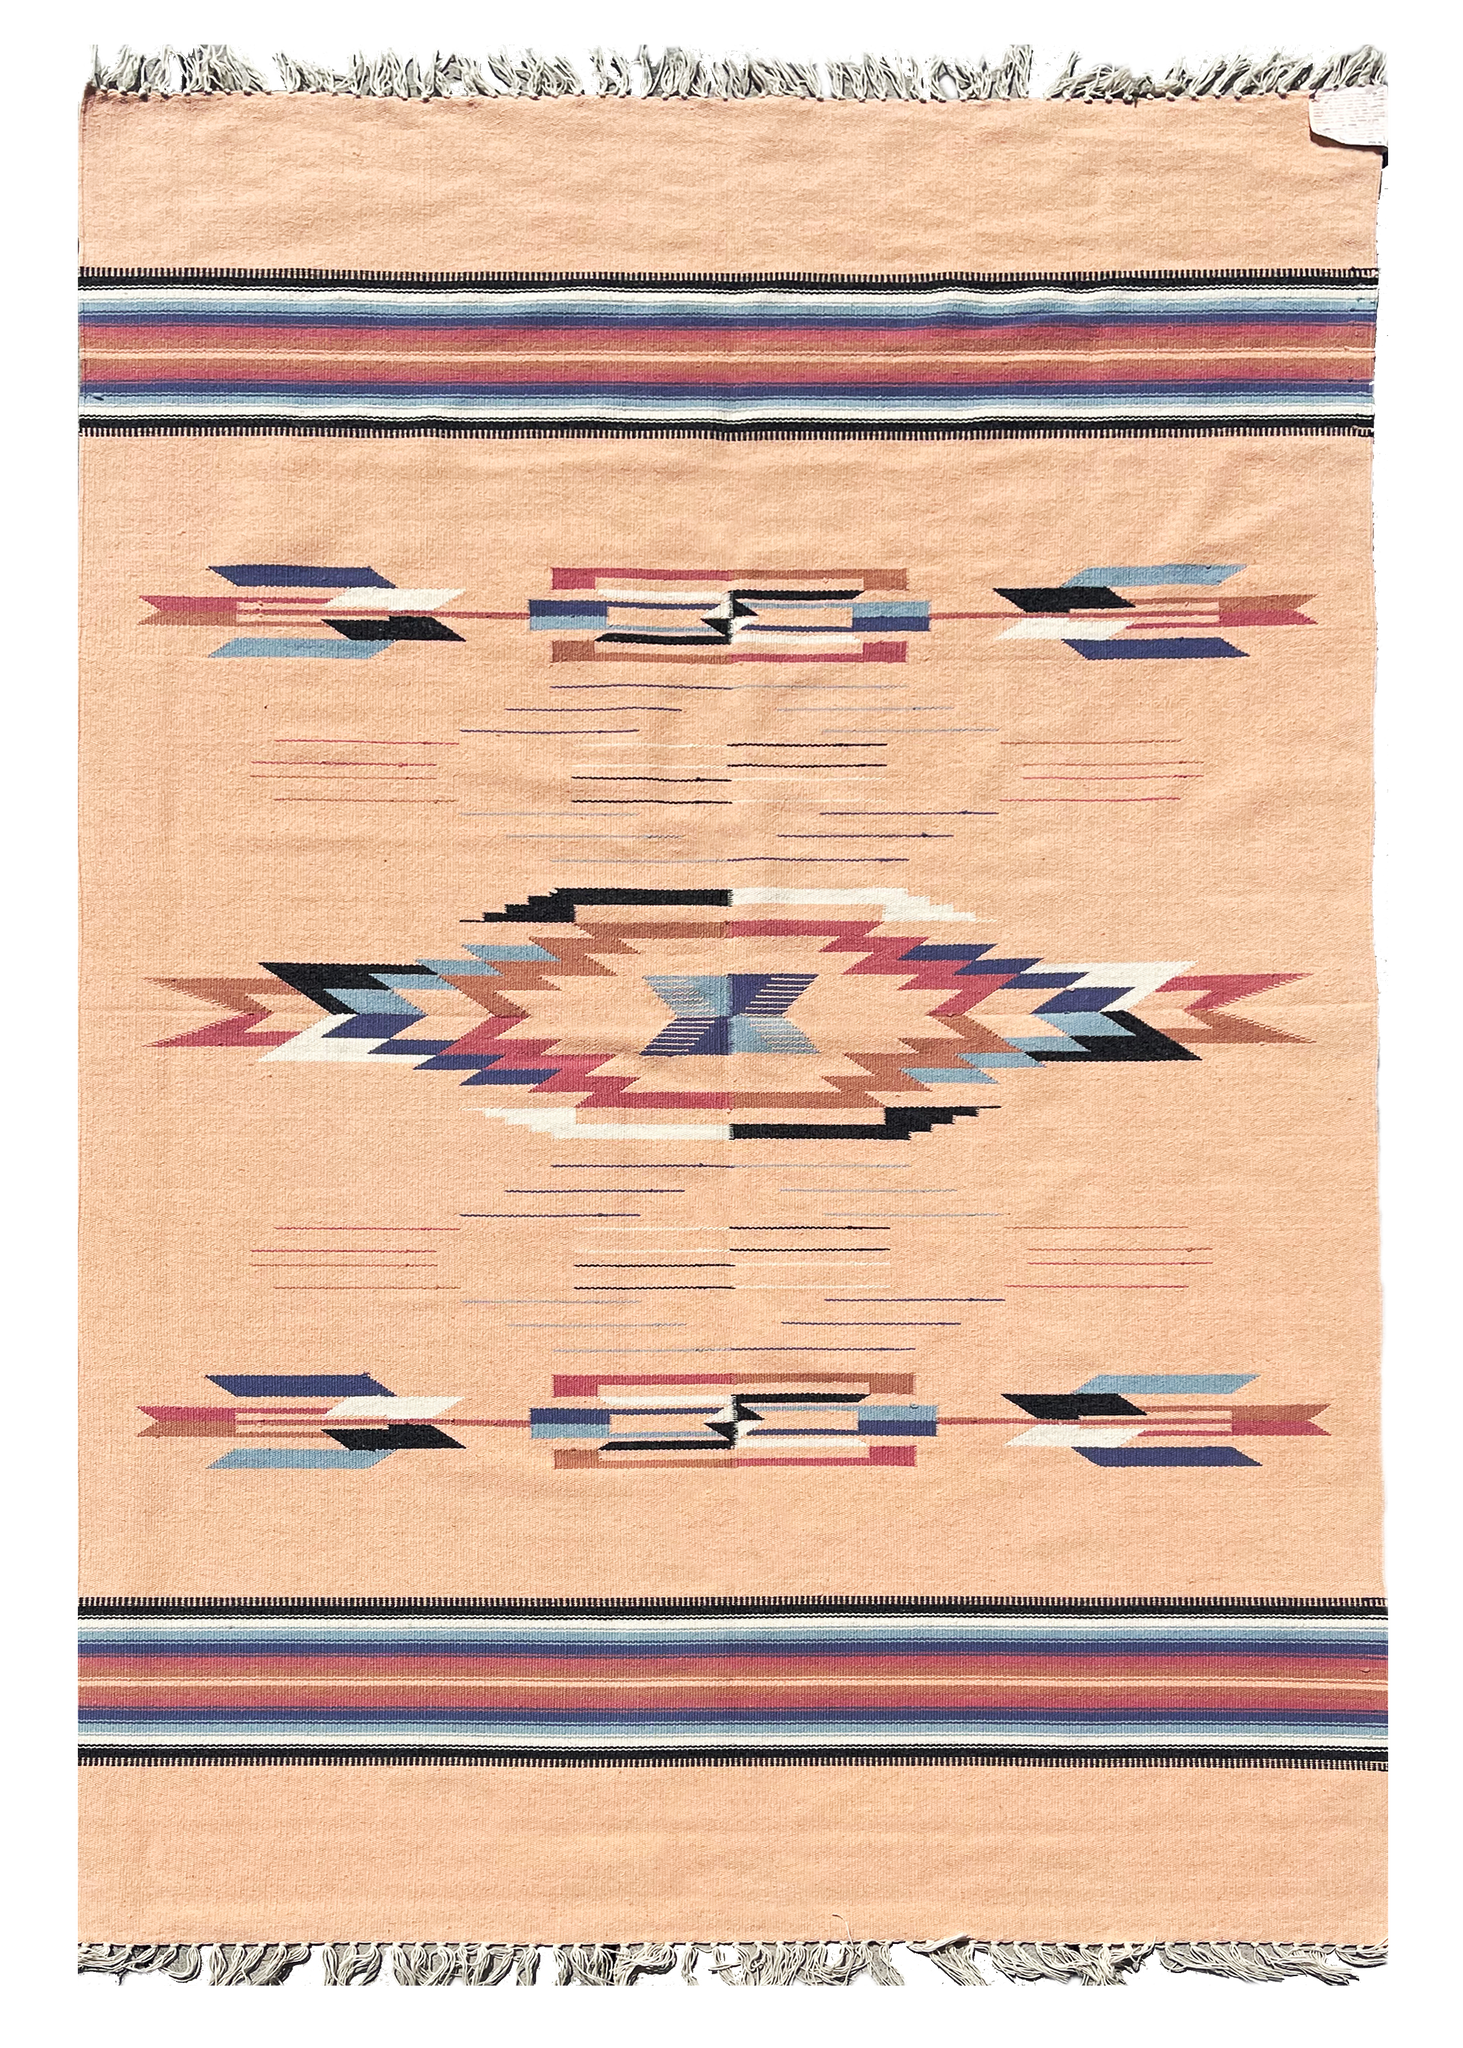 Chimayo Hand-Woven Textile